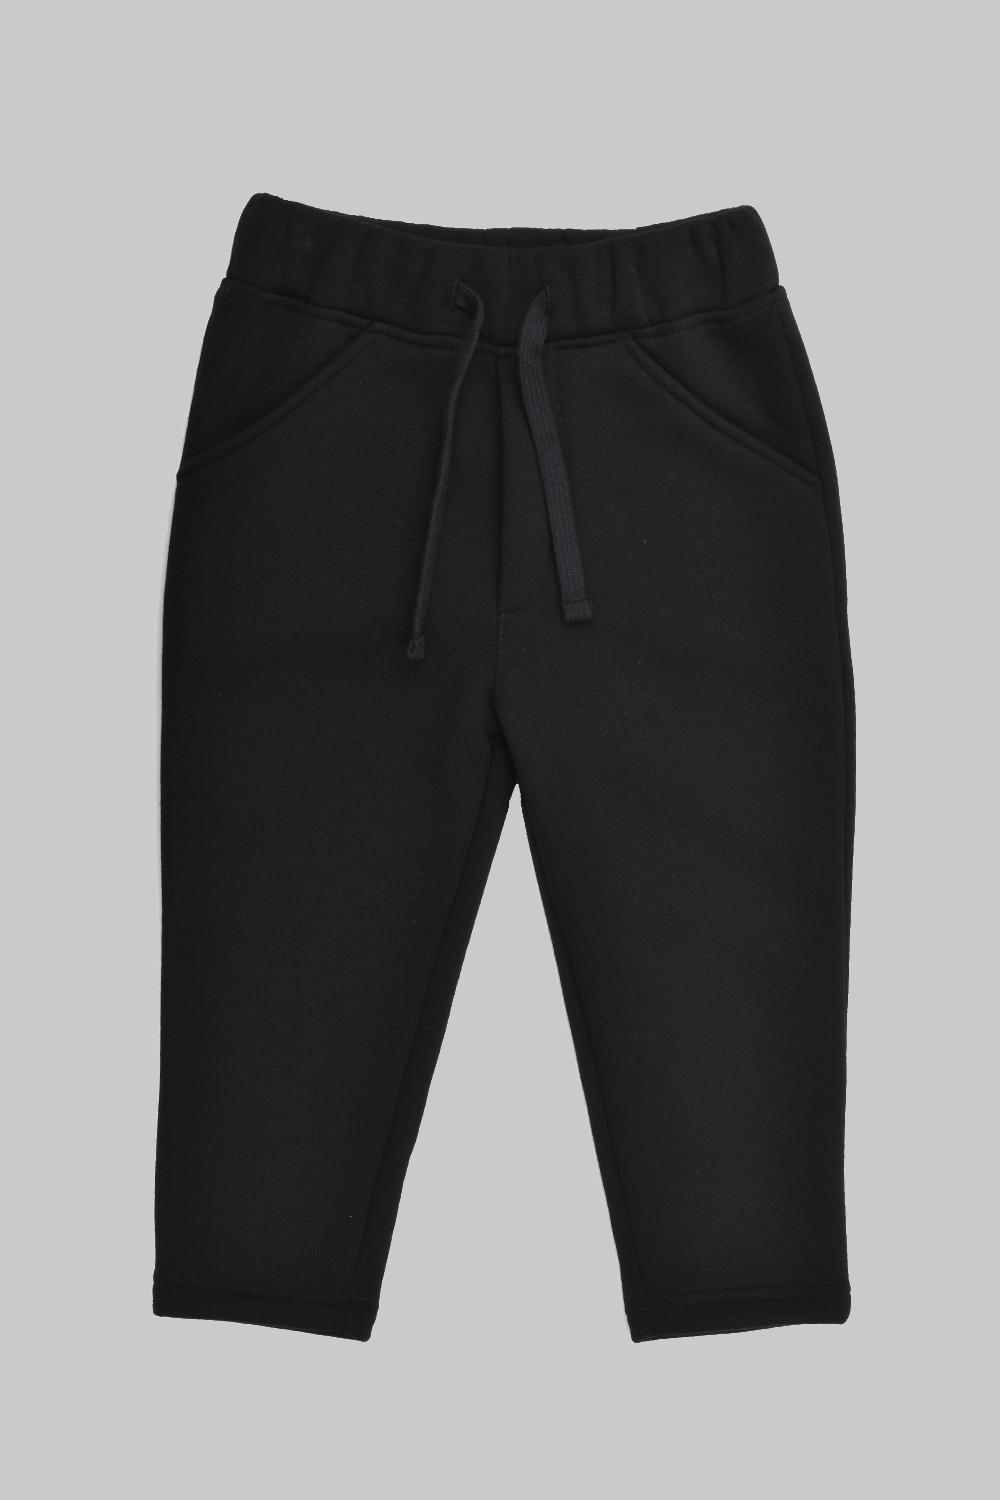 Black Comfort Fit Pants 2.0